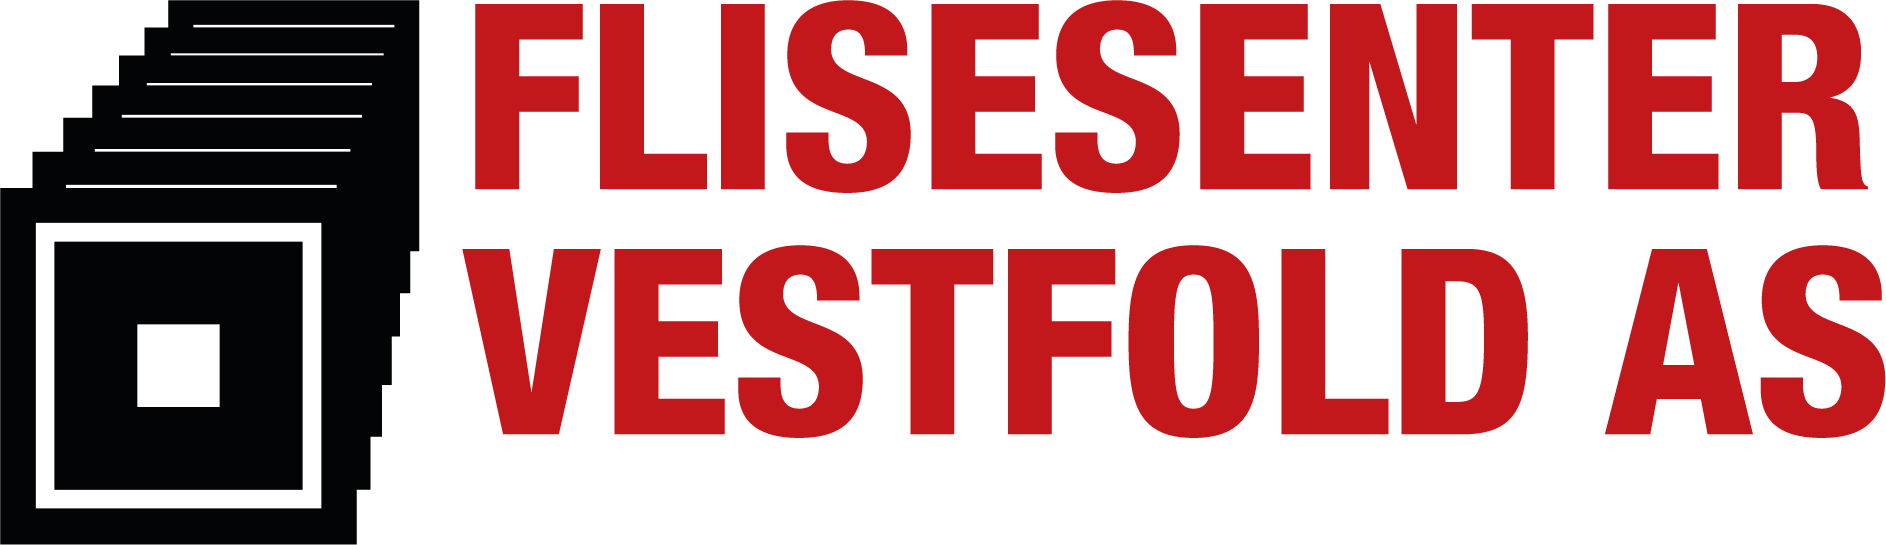 Flisesenter-logo